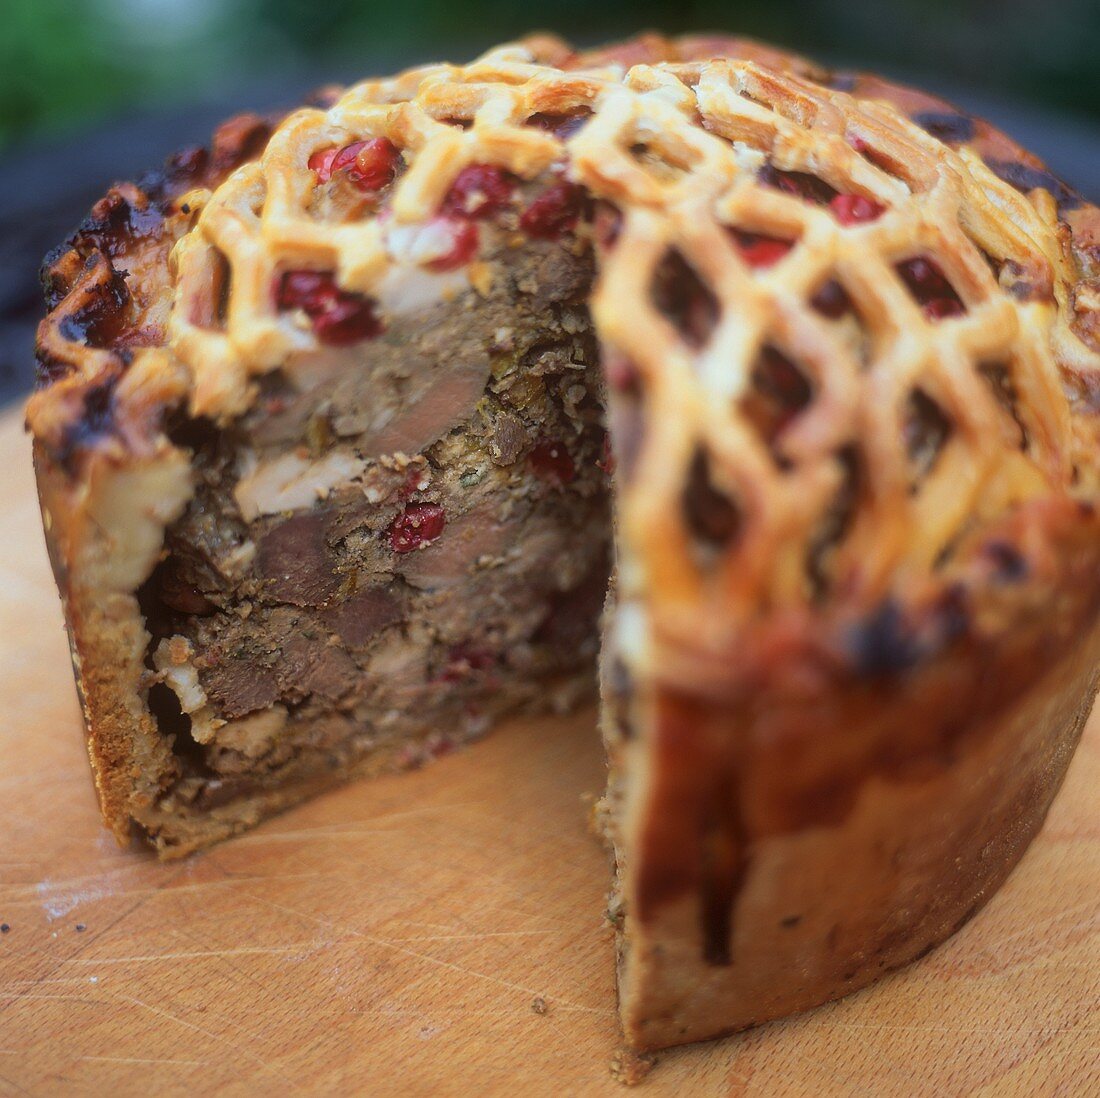 Venison pie with cranberries, a piece cut